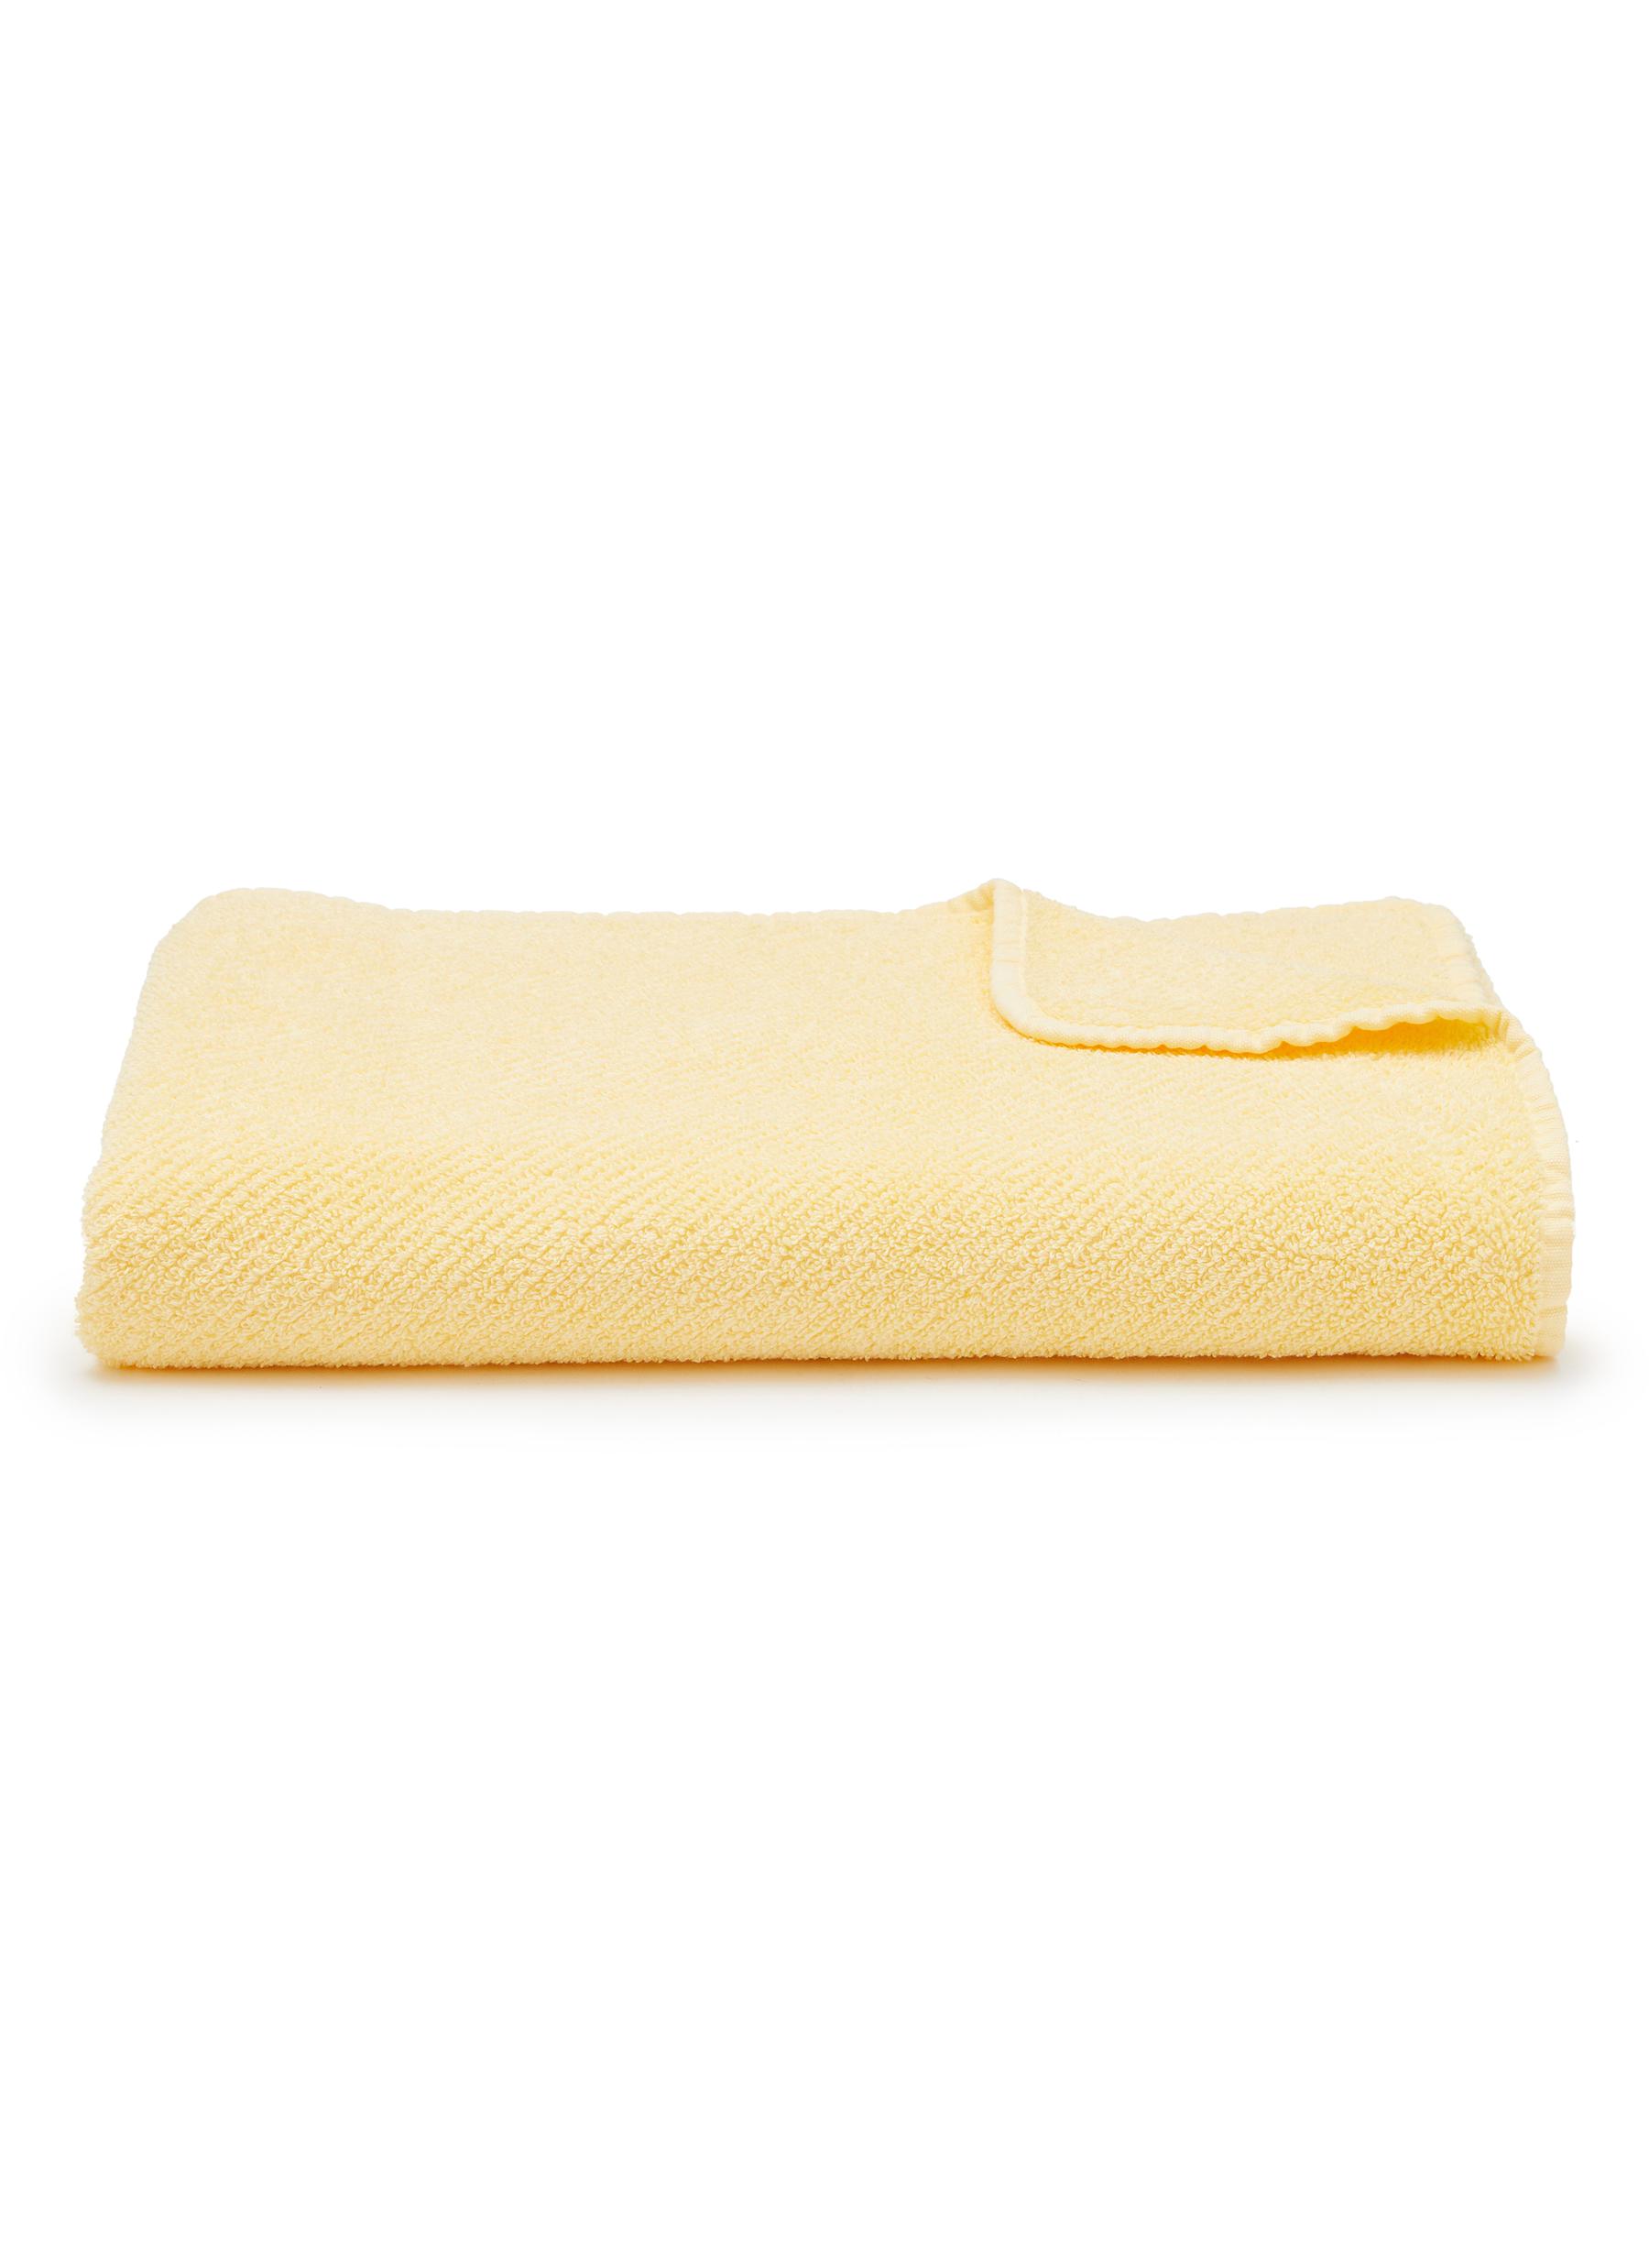 Super Twill Bath Towel - Popcorn